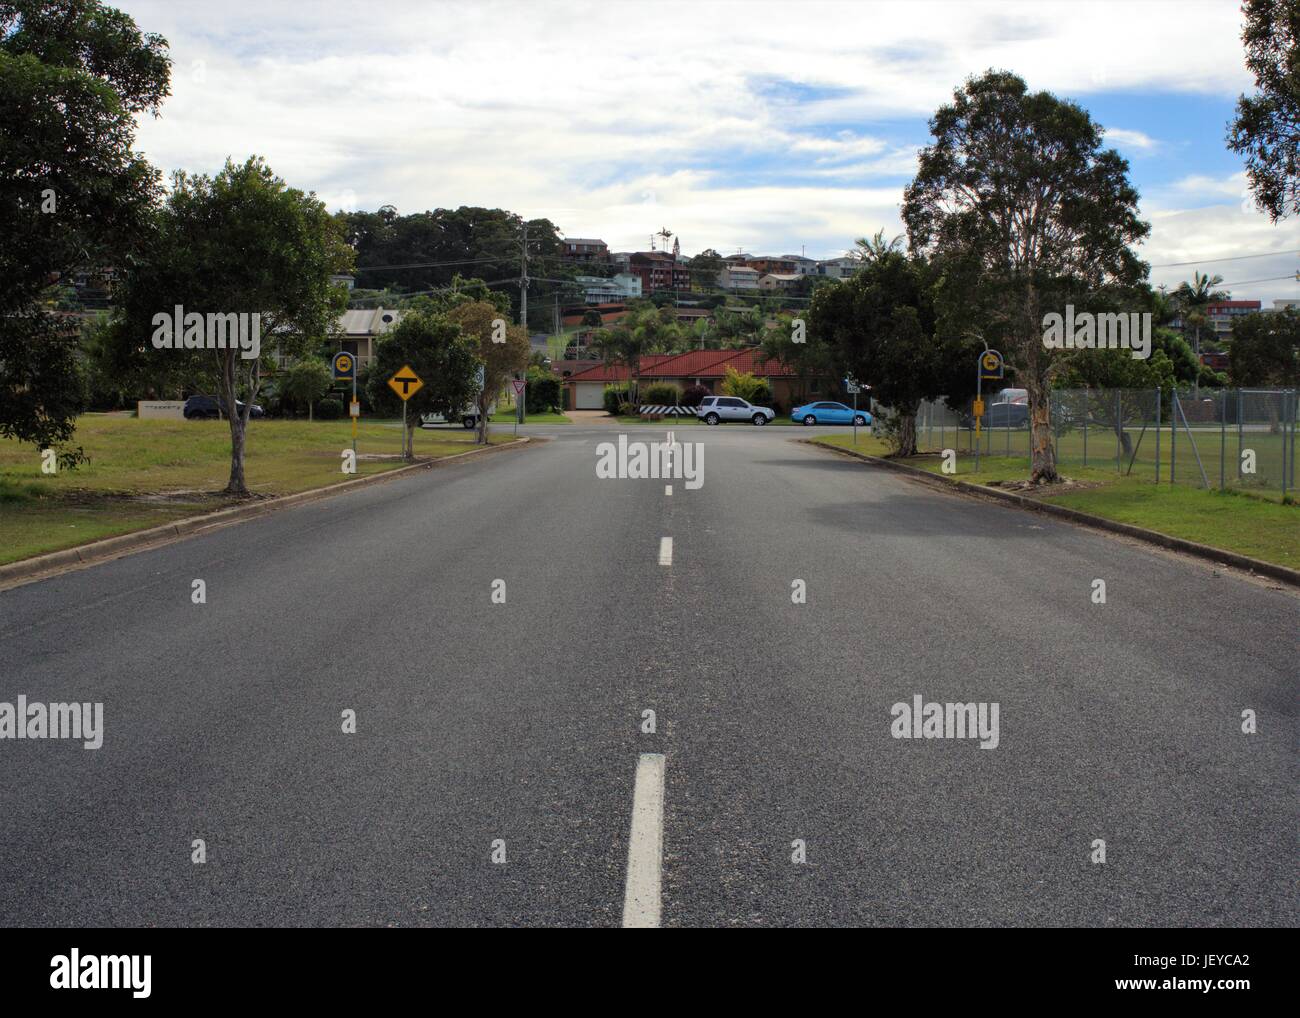 Street à Coffs Harbour, New South Wales. Près de rue déserte en Australie avec la signalisation routière, T point, indicateur de limite de vitesse, les arrêts de bus, des maisons, des voitures. Banque D'Images